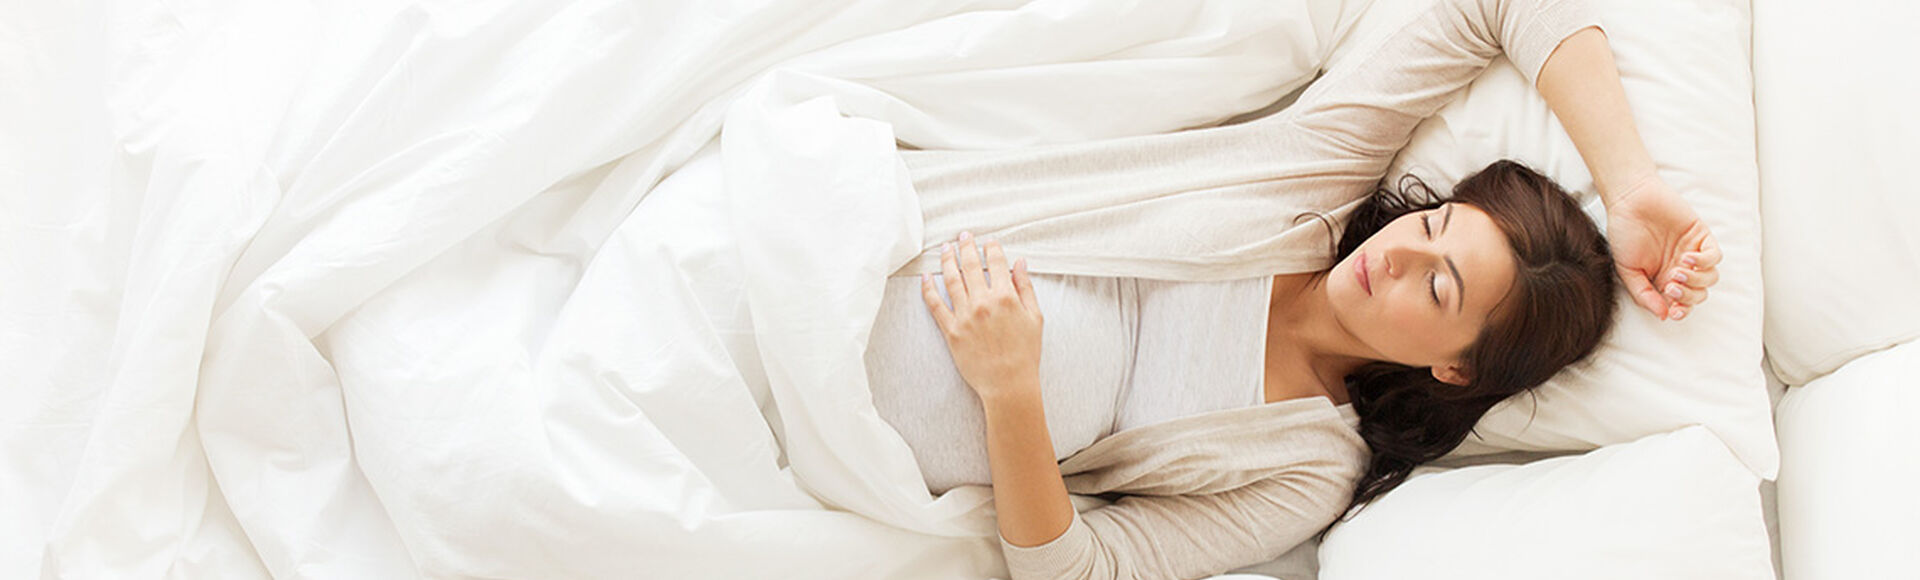 Que debes hacer durante la semana 39 de embarazo | by Huggies Argentina